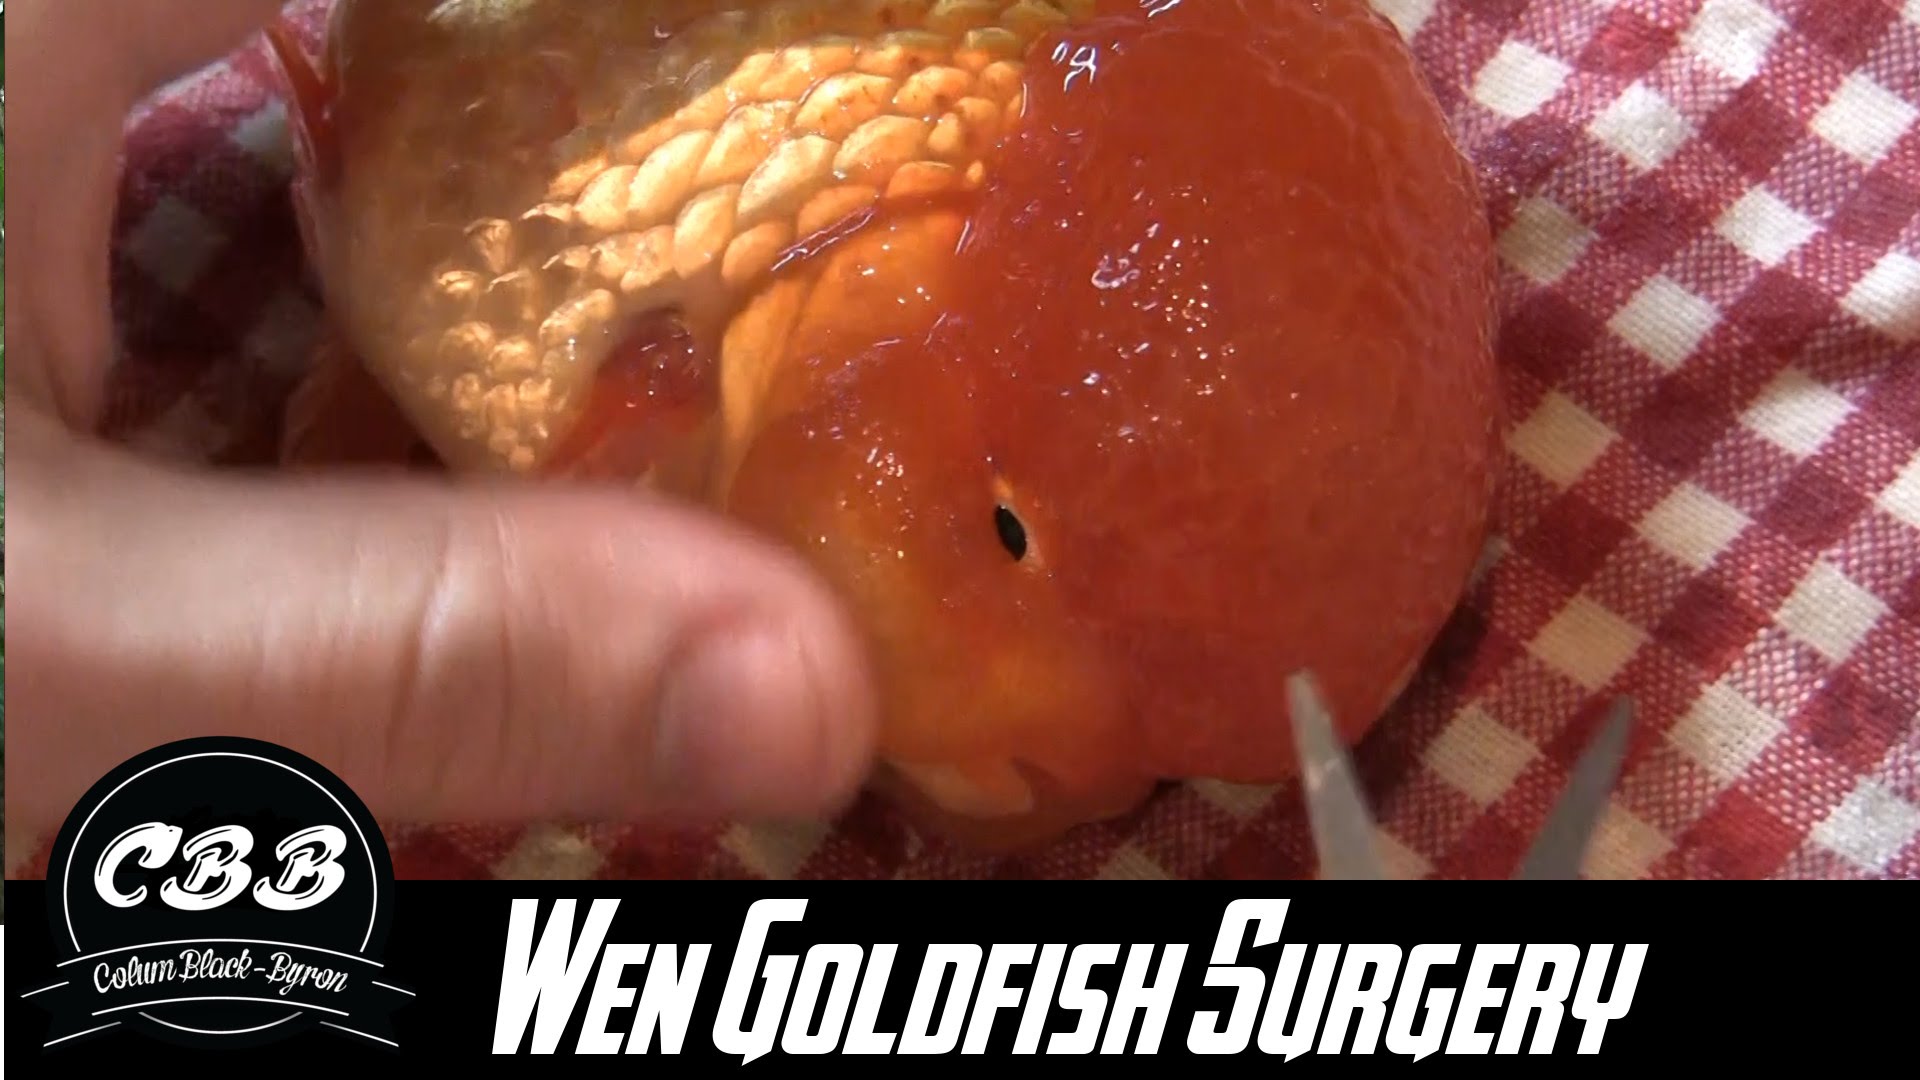 Oranda Goldfish Wen Surgery/Trimming/Removing